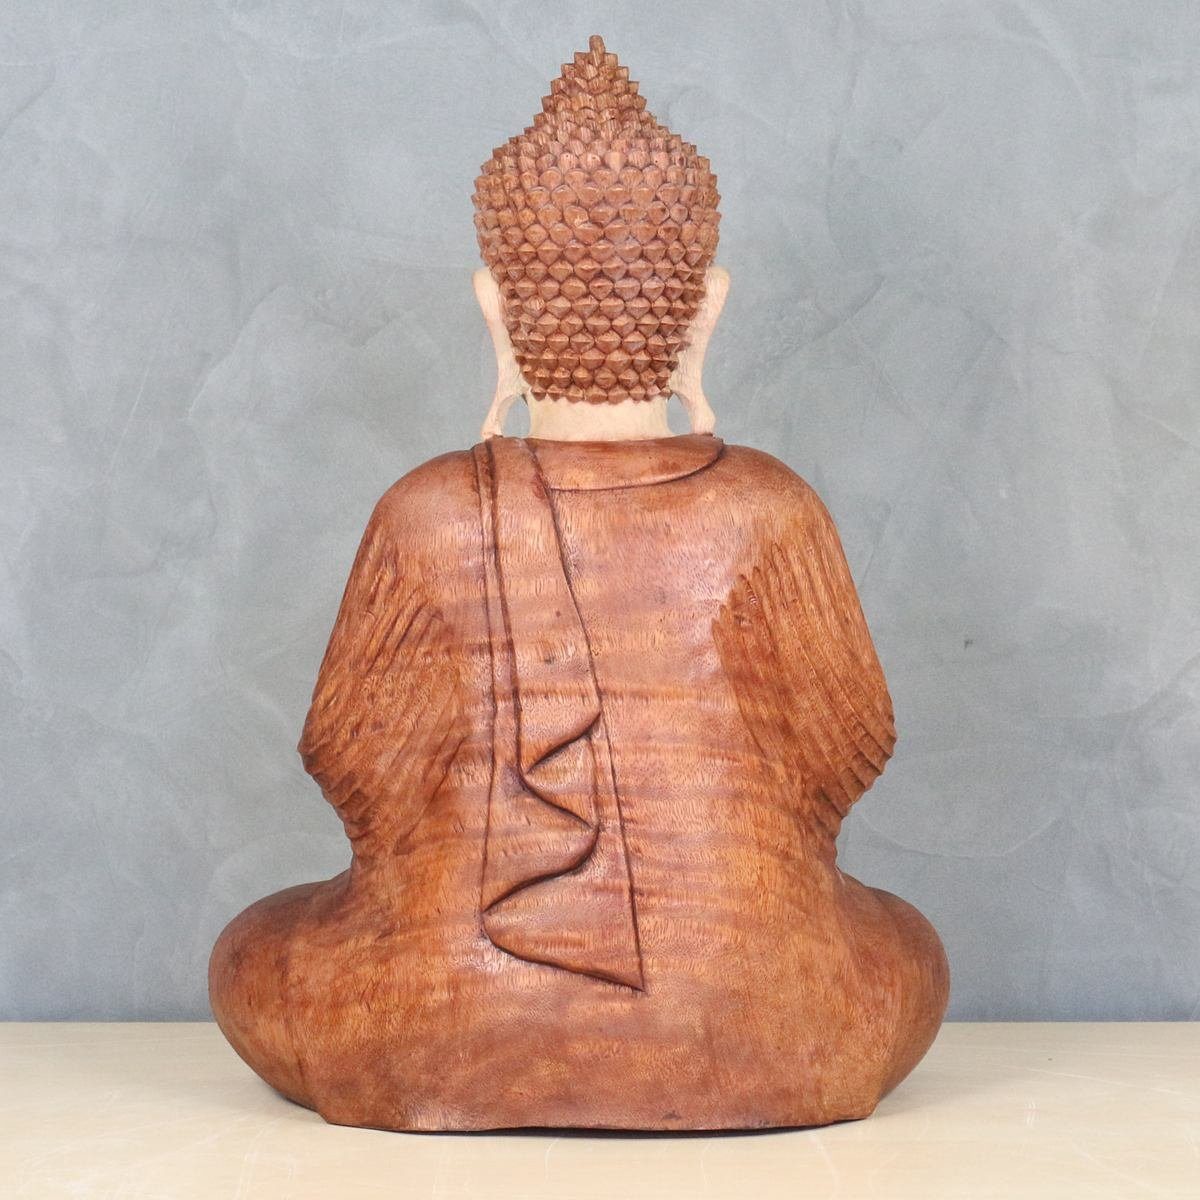 (1 B3 50 Galerie Oriental Massiv in cm Holzfigur Handarbeit Herstellung im St), Buddha Dekofigur traditionelle Sitzender Ursprungsland